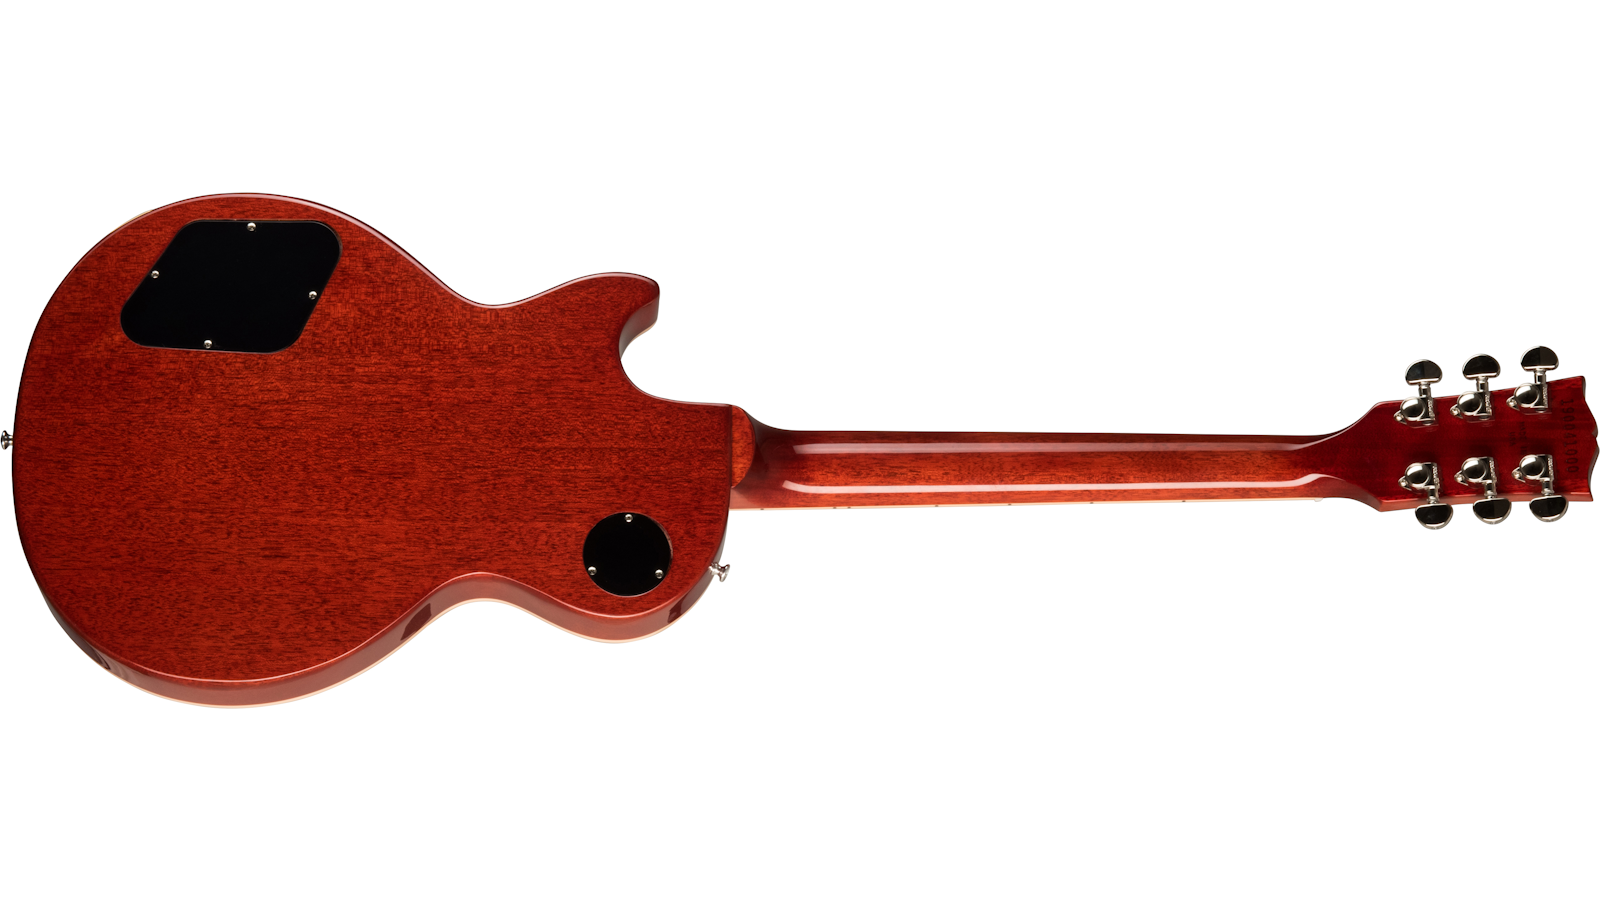 Gibson Les Paul Standard 60s Original 2h Ht Rw - Unburst - Guitarra eléctrica de corte único. - Variation 2